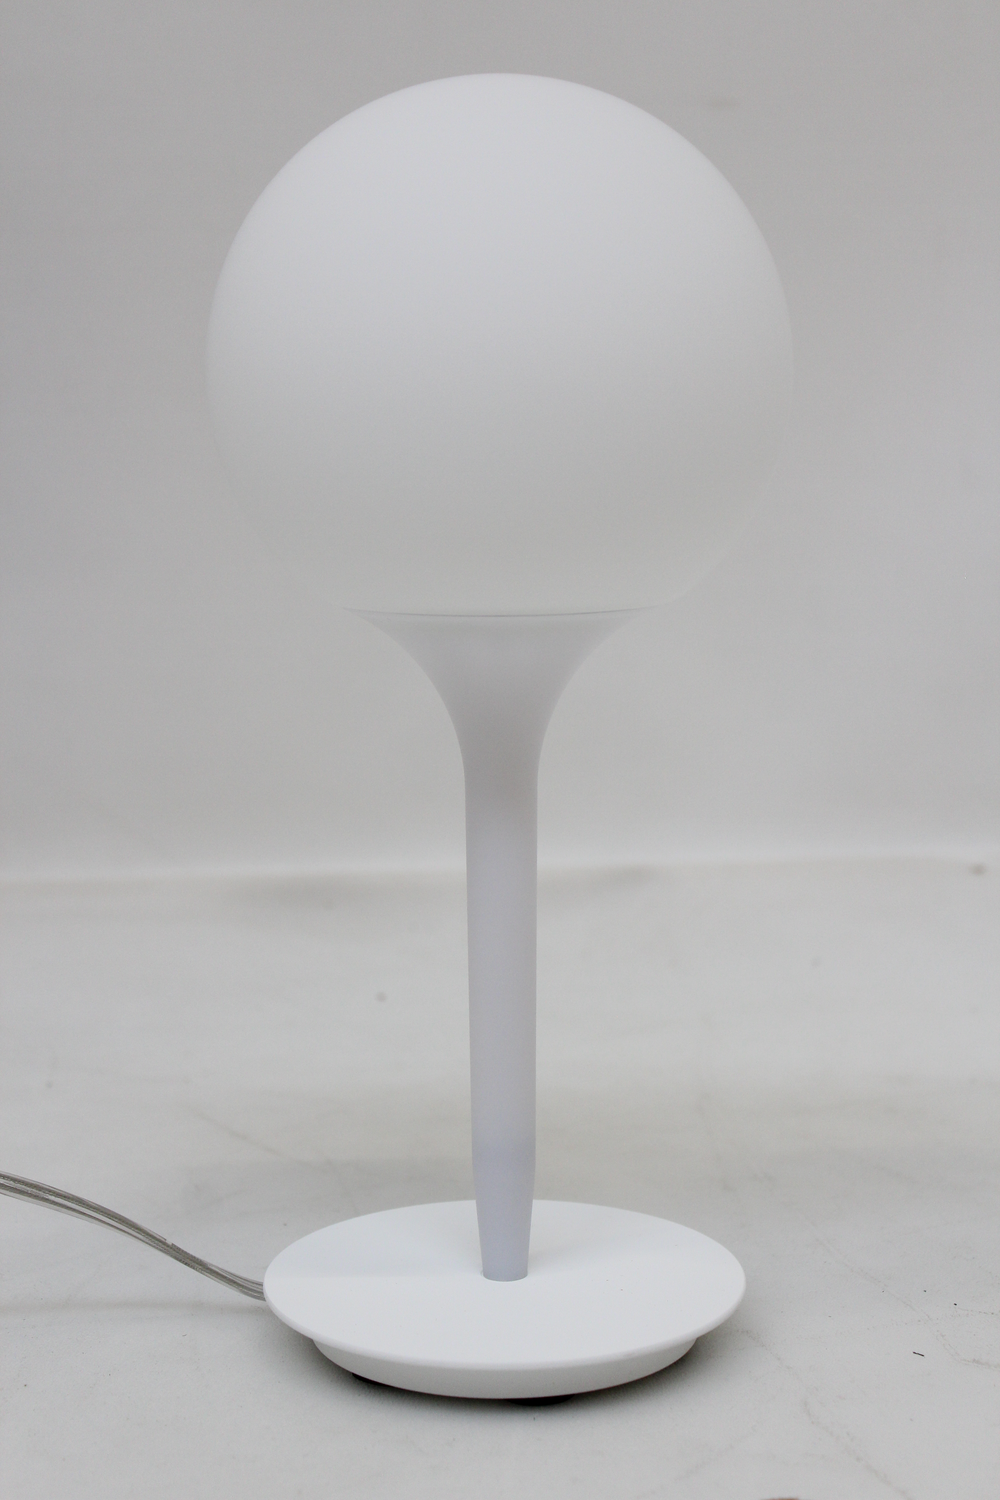 Castore Tischleuchte Tischlampe Nachttischlampe Lampe Leuchte E14 H 31,4 cm weiß